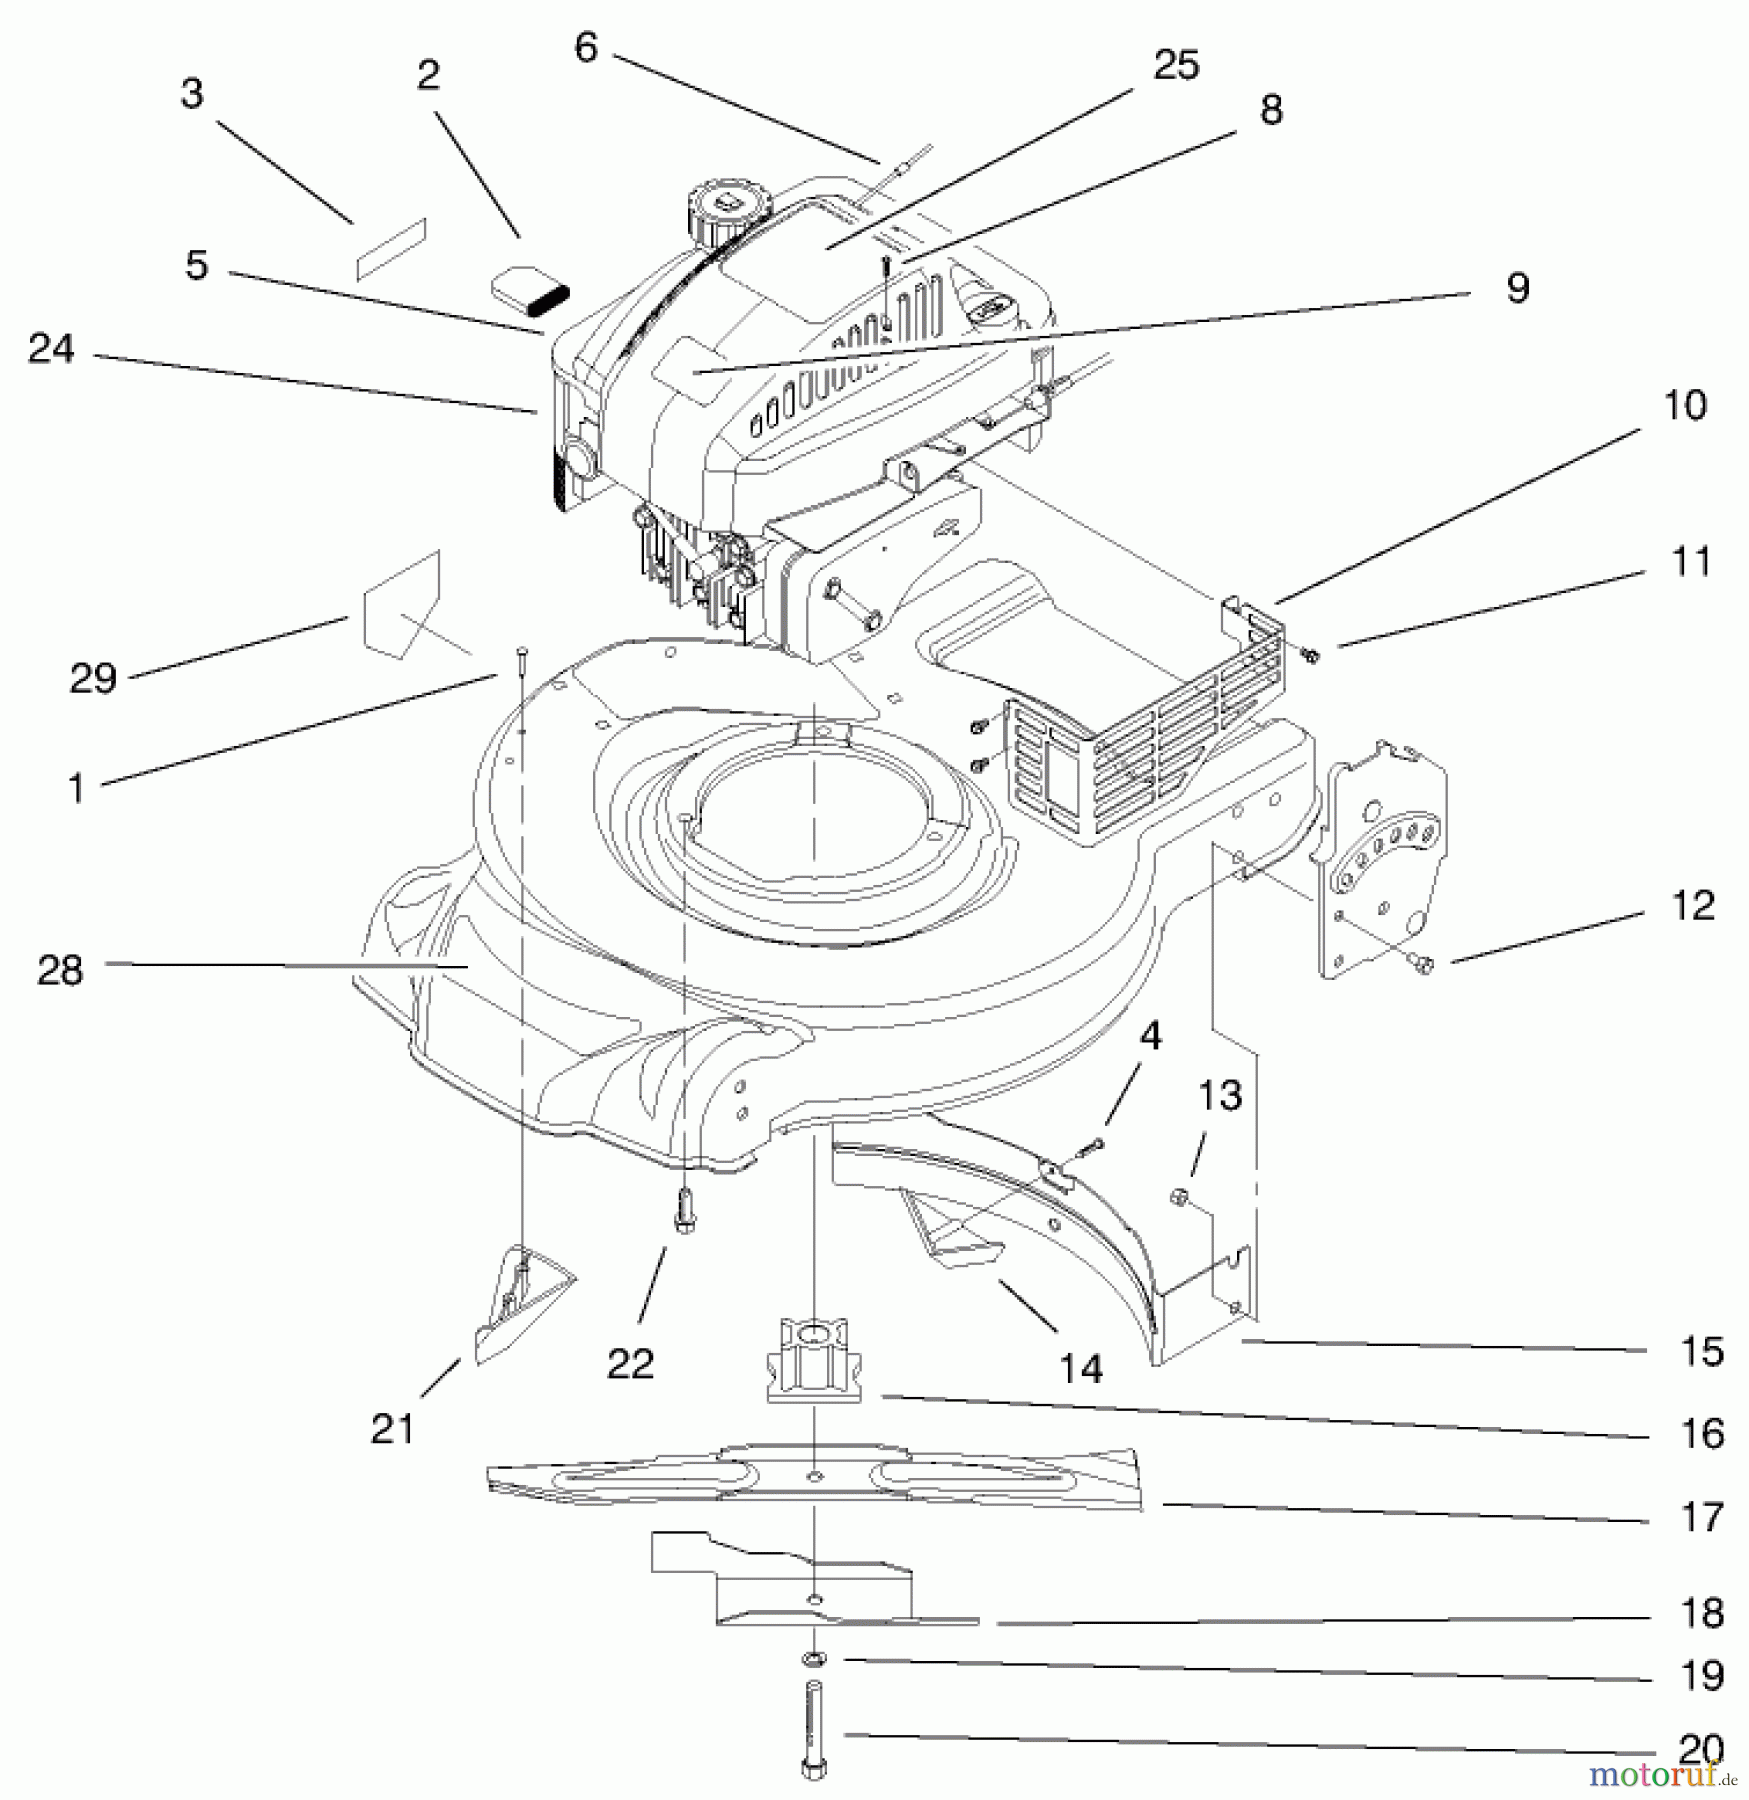  Toro Neu Mowers, Walk-Behind Seite 1 20450 (R-21P) - Toro Recycler Mower, R-21P, 1998 (8900001-8999999) ENGINE ASSEMBLY